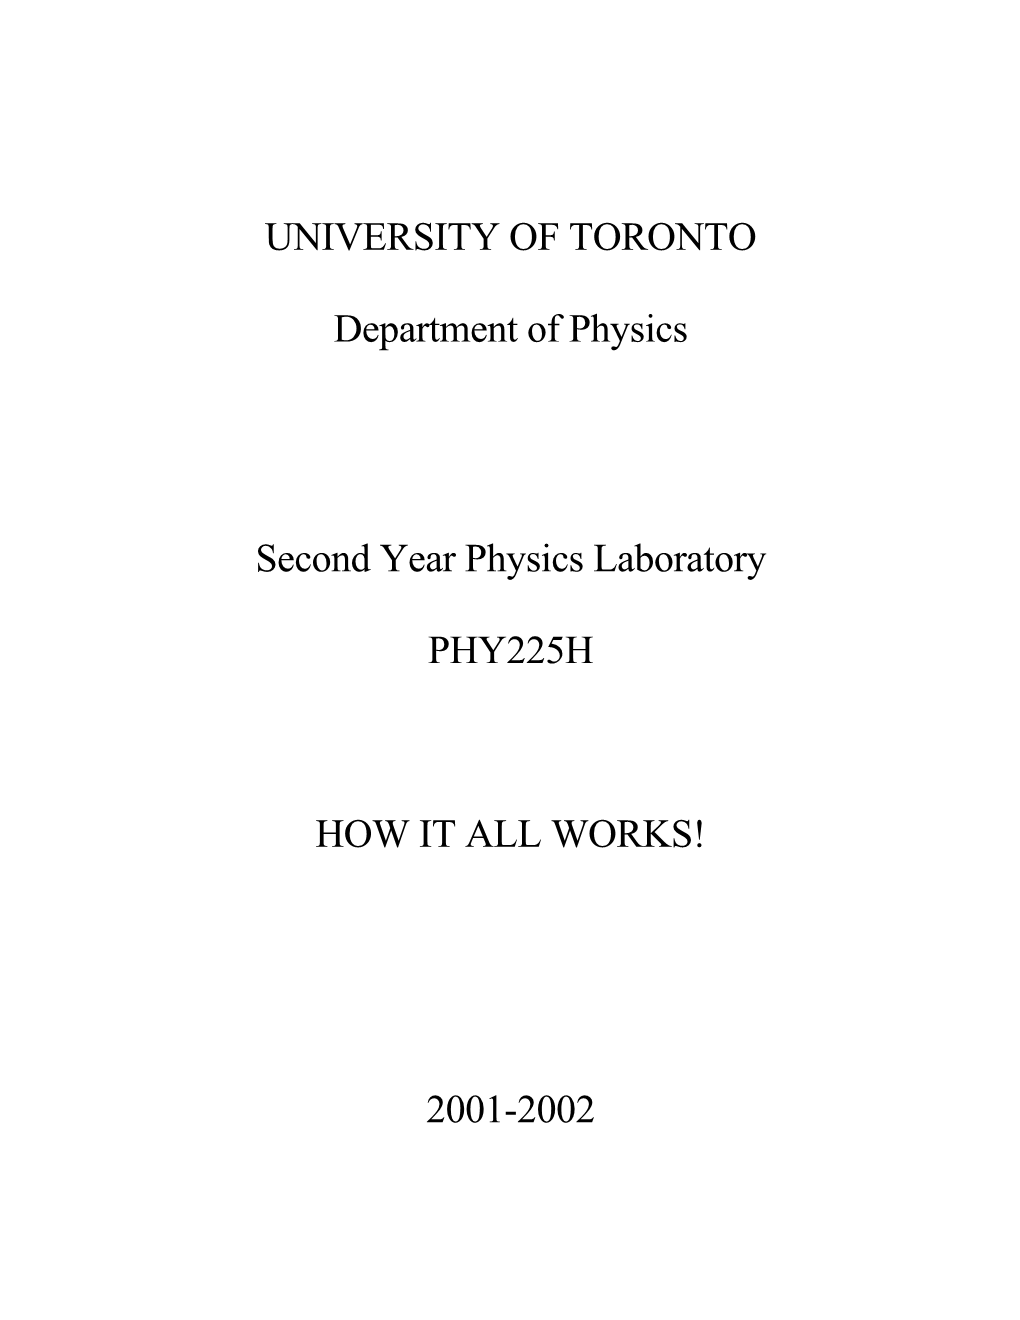 University of Toronto s3